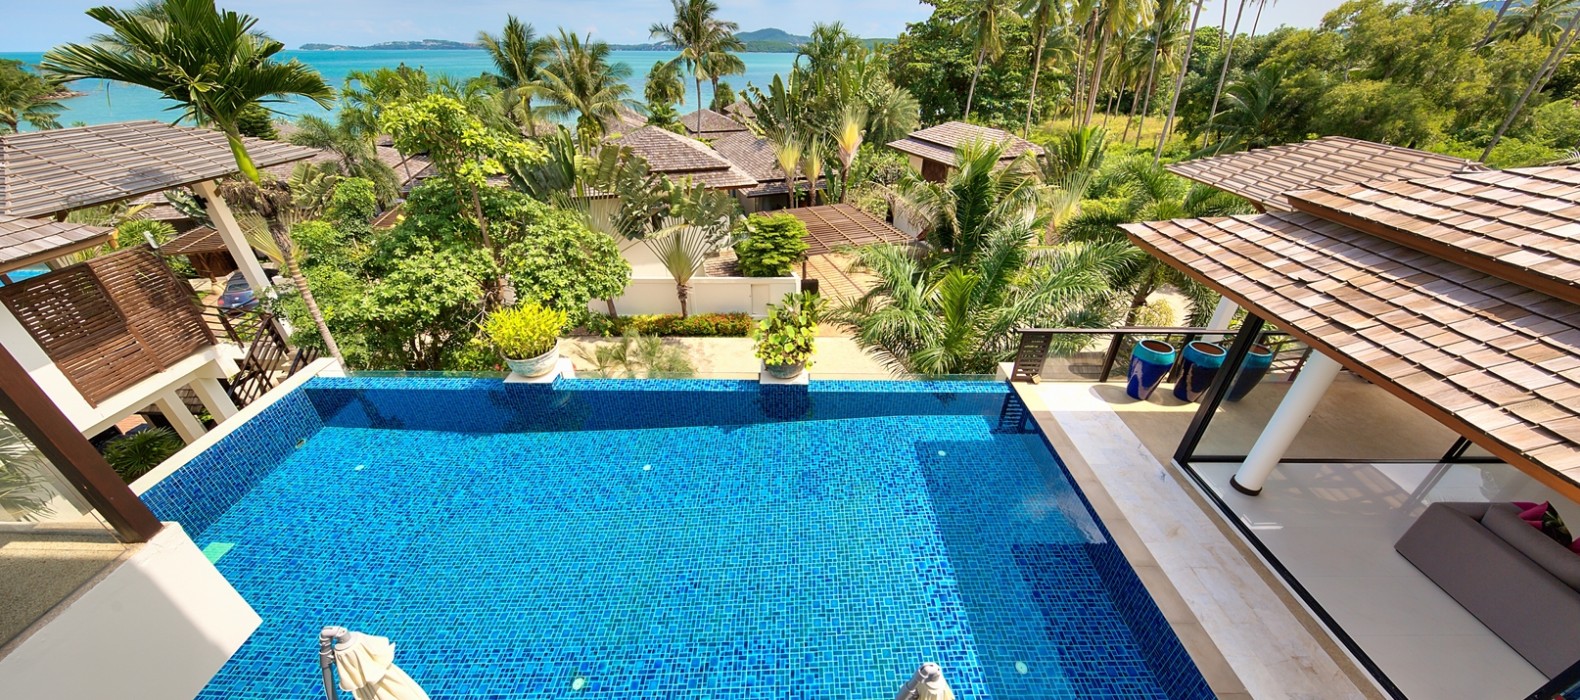 Pool view of Villa Calm Samui in Koh Samui